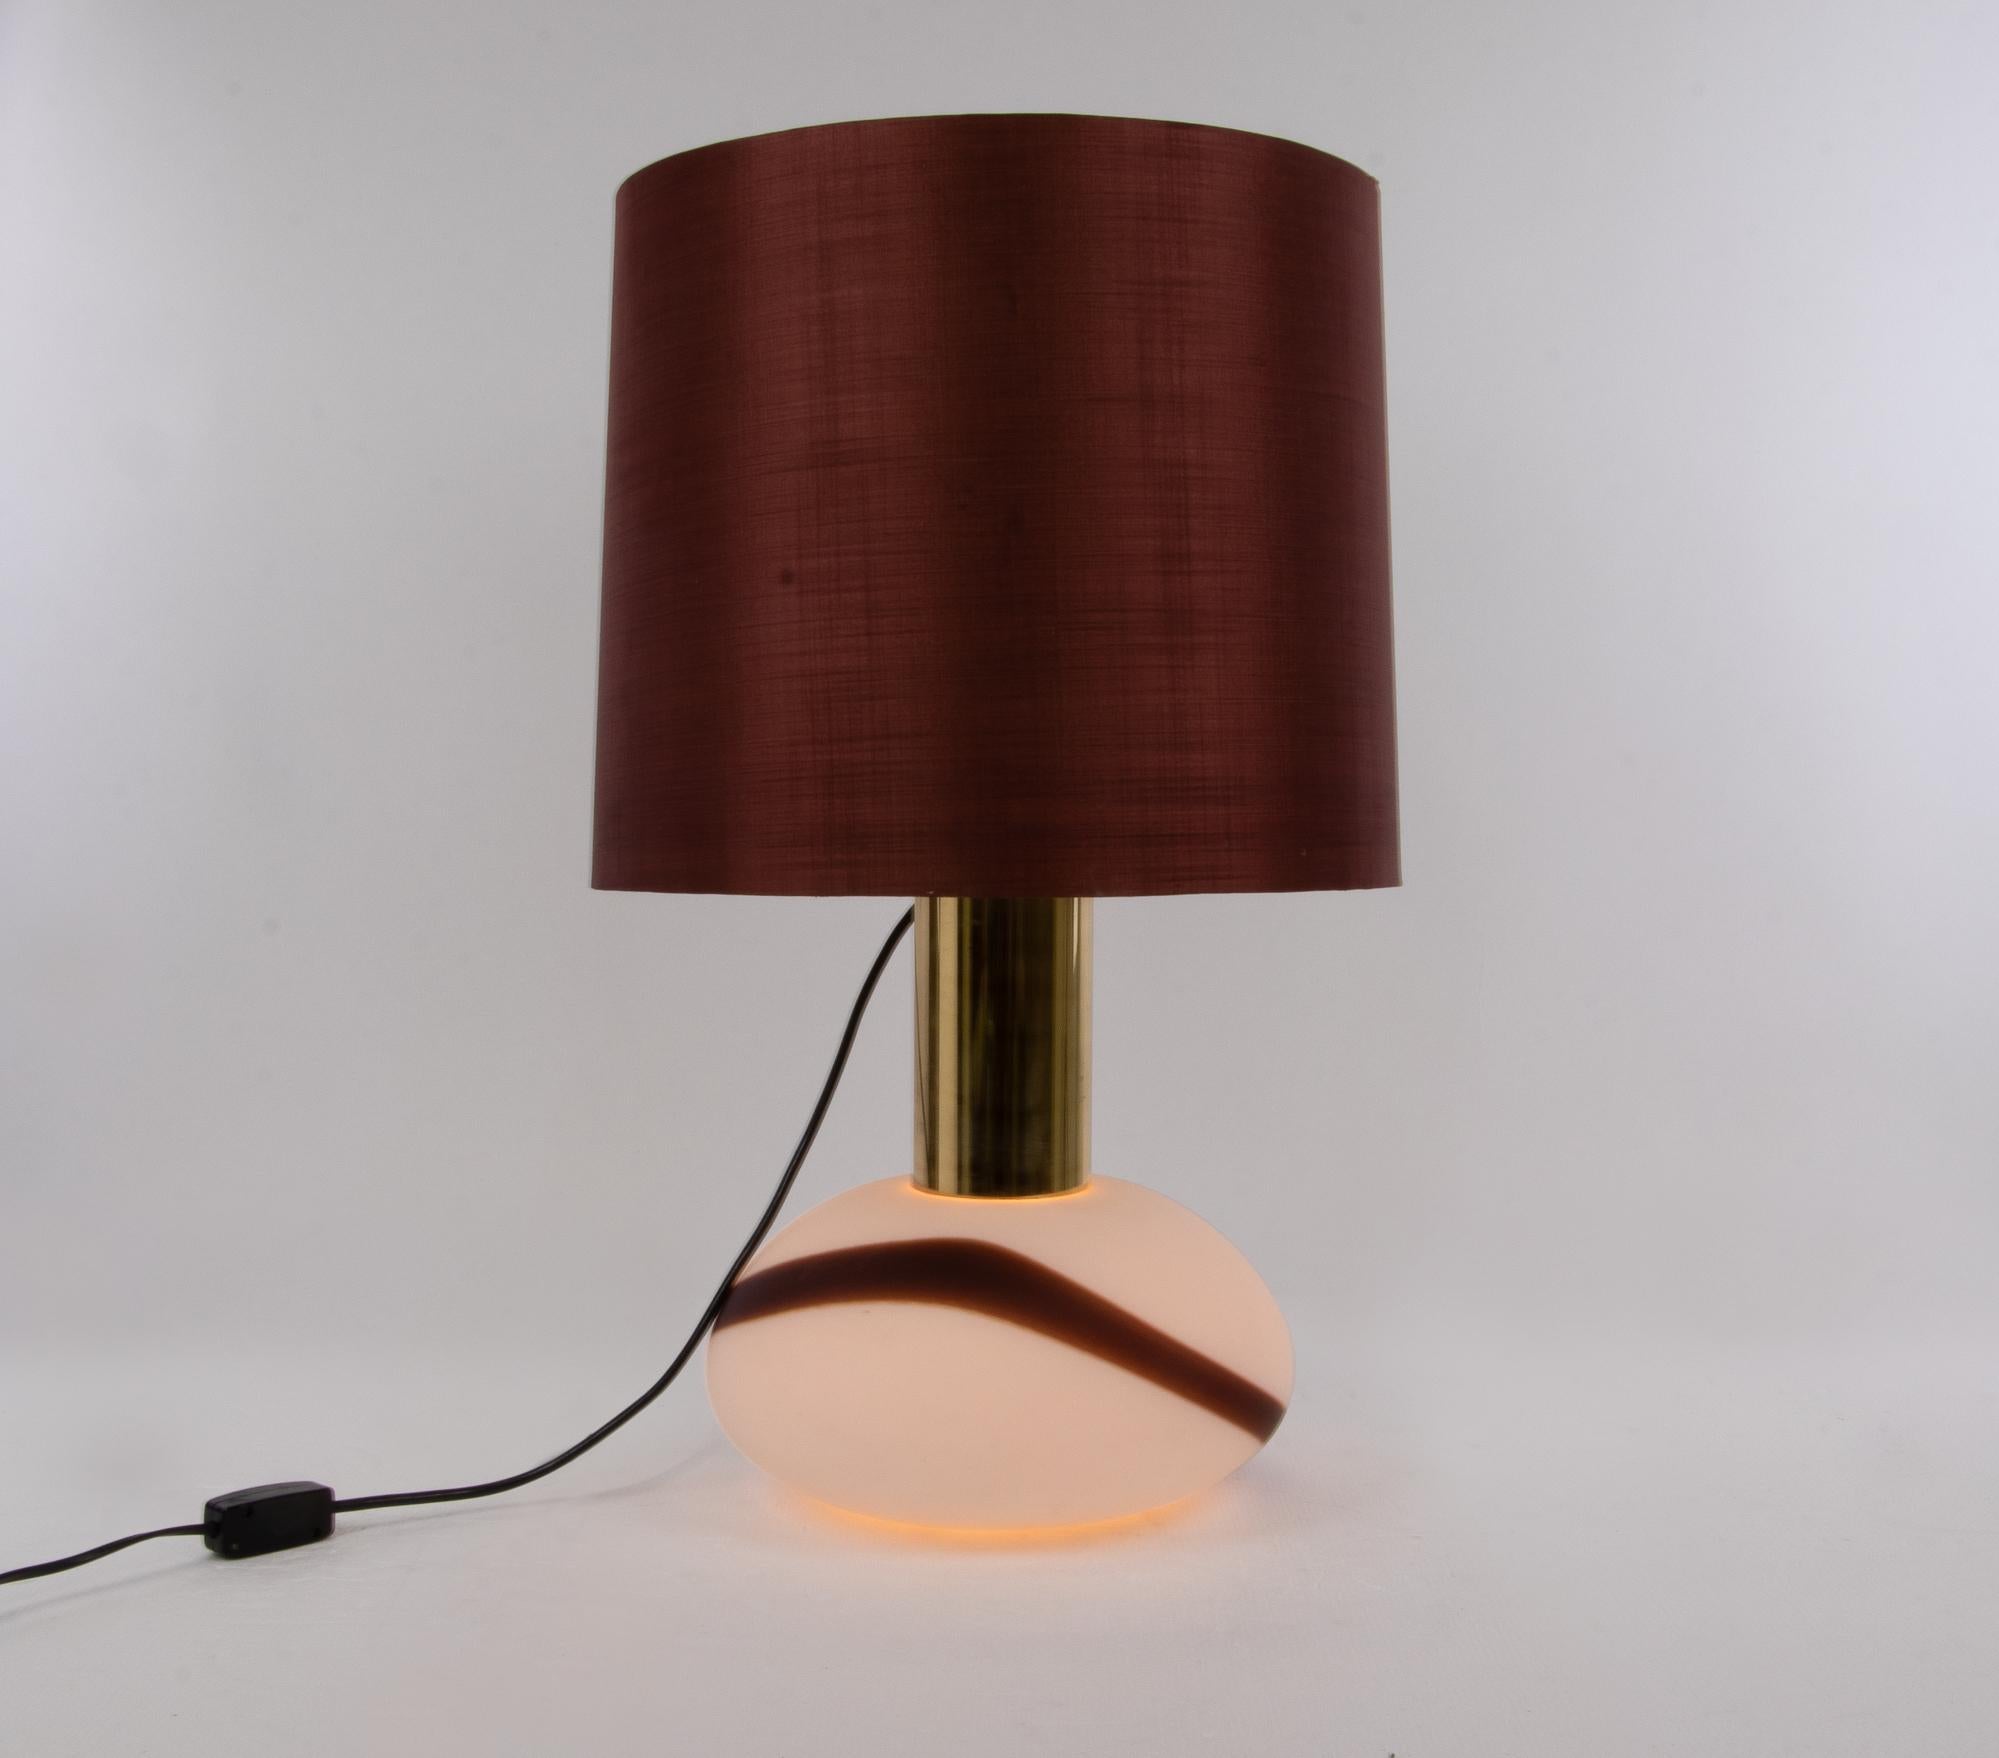 Elegante Tischlampe im Vintage-Design mit weißem Muranoglaskörper mit farbigen Akzenten auf Messingfuß. Die Glühbirnen können separat geschaltet werden (0-1-2-1-0). Der Lampenschirm ist aus Stoff gefertigt. Hergestellt von der